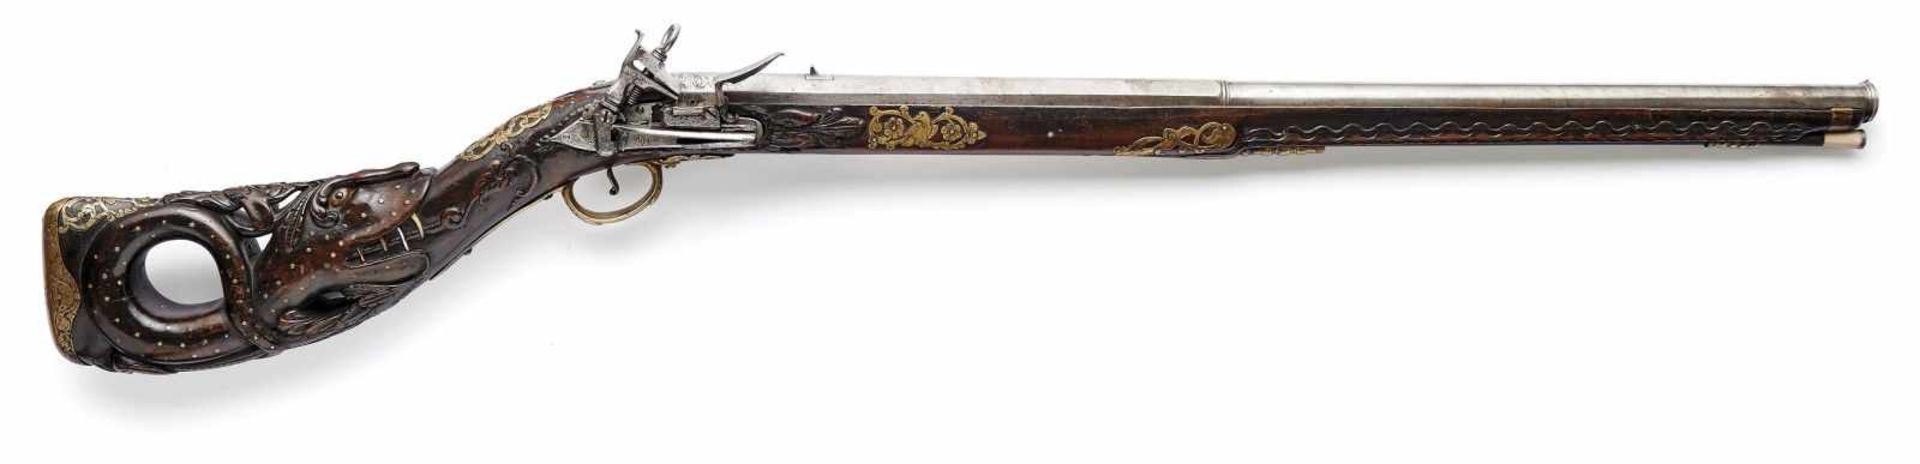 Prunkvolles Steinschlossgewehr Wohl Spanien, um 1750 Nussholzvollschaft mit reichem,